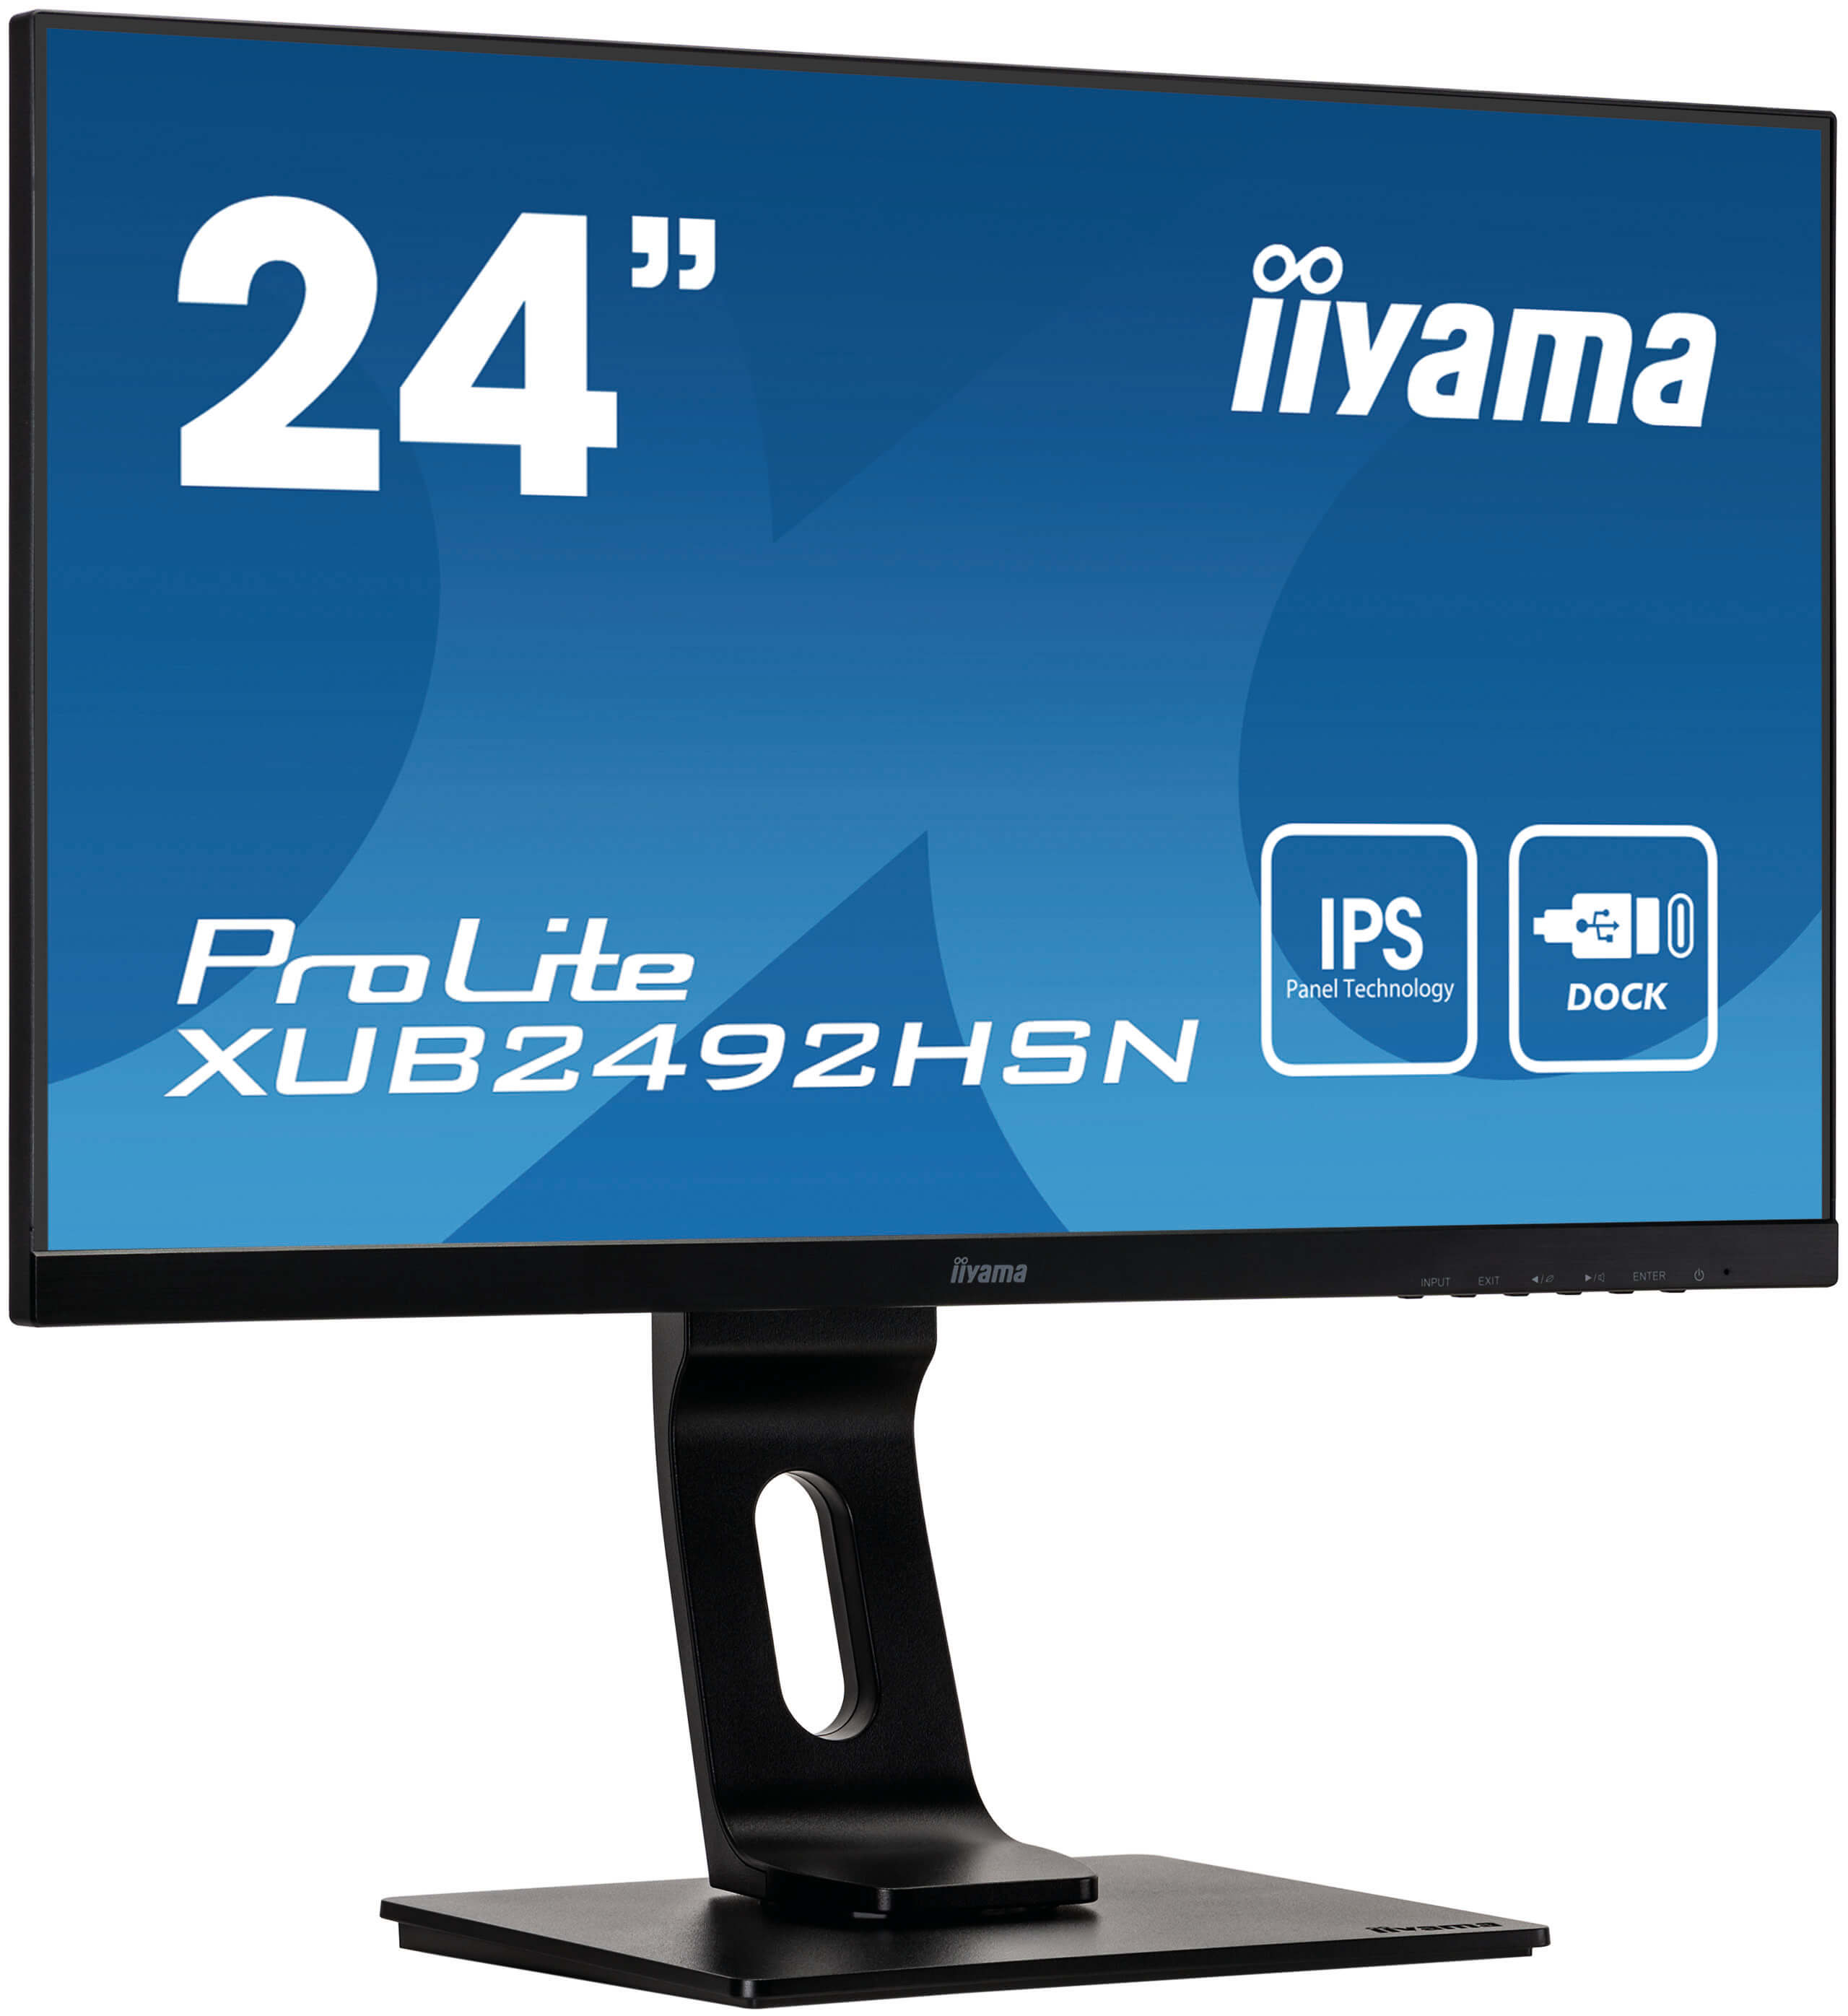 Iiyama ProLite XUB2492HSN-B1 | 23,8" | Monitor mit IPS-Panel Technologie und USB-C-Anschluss